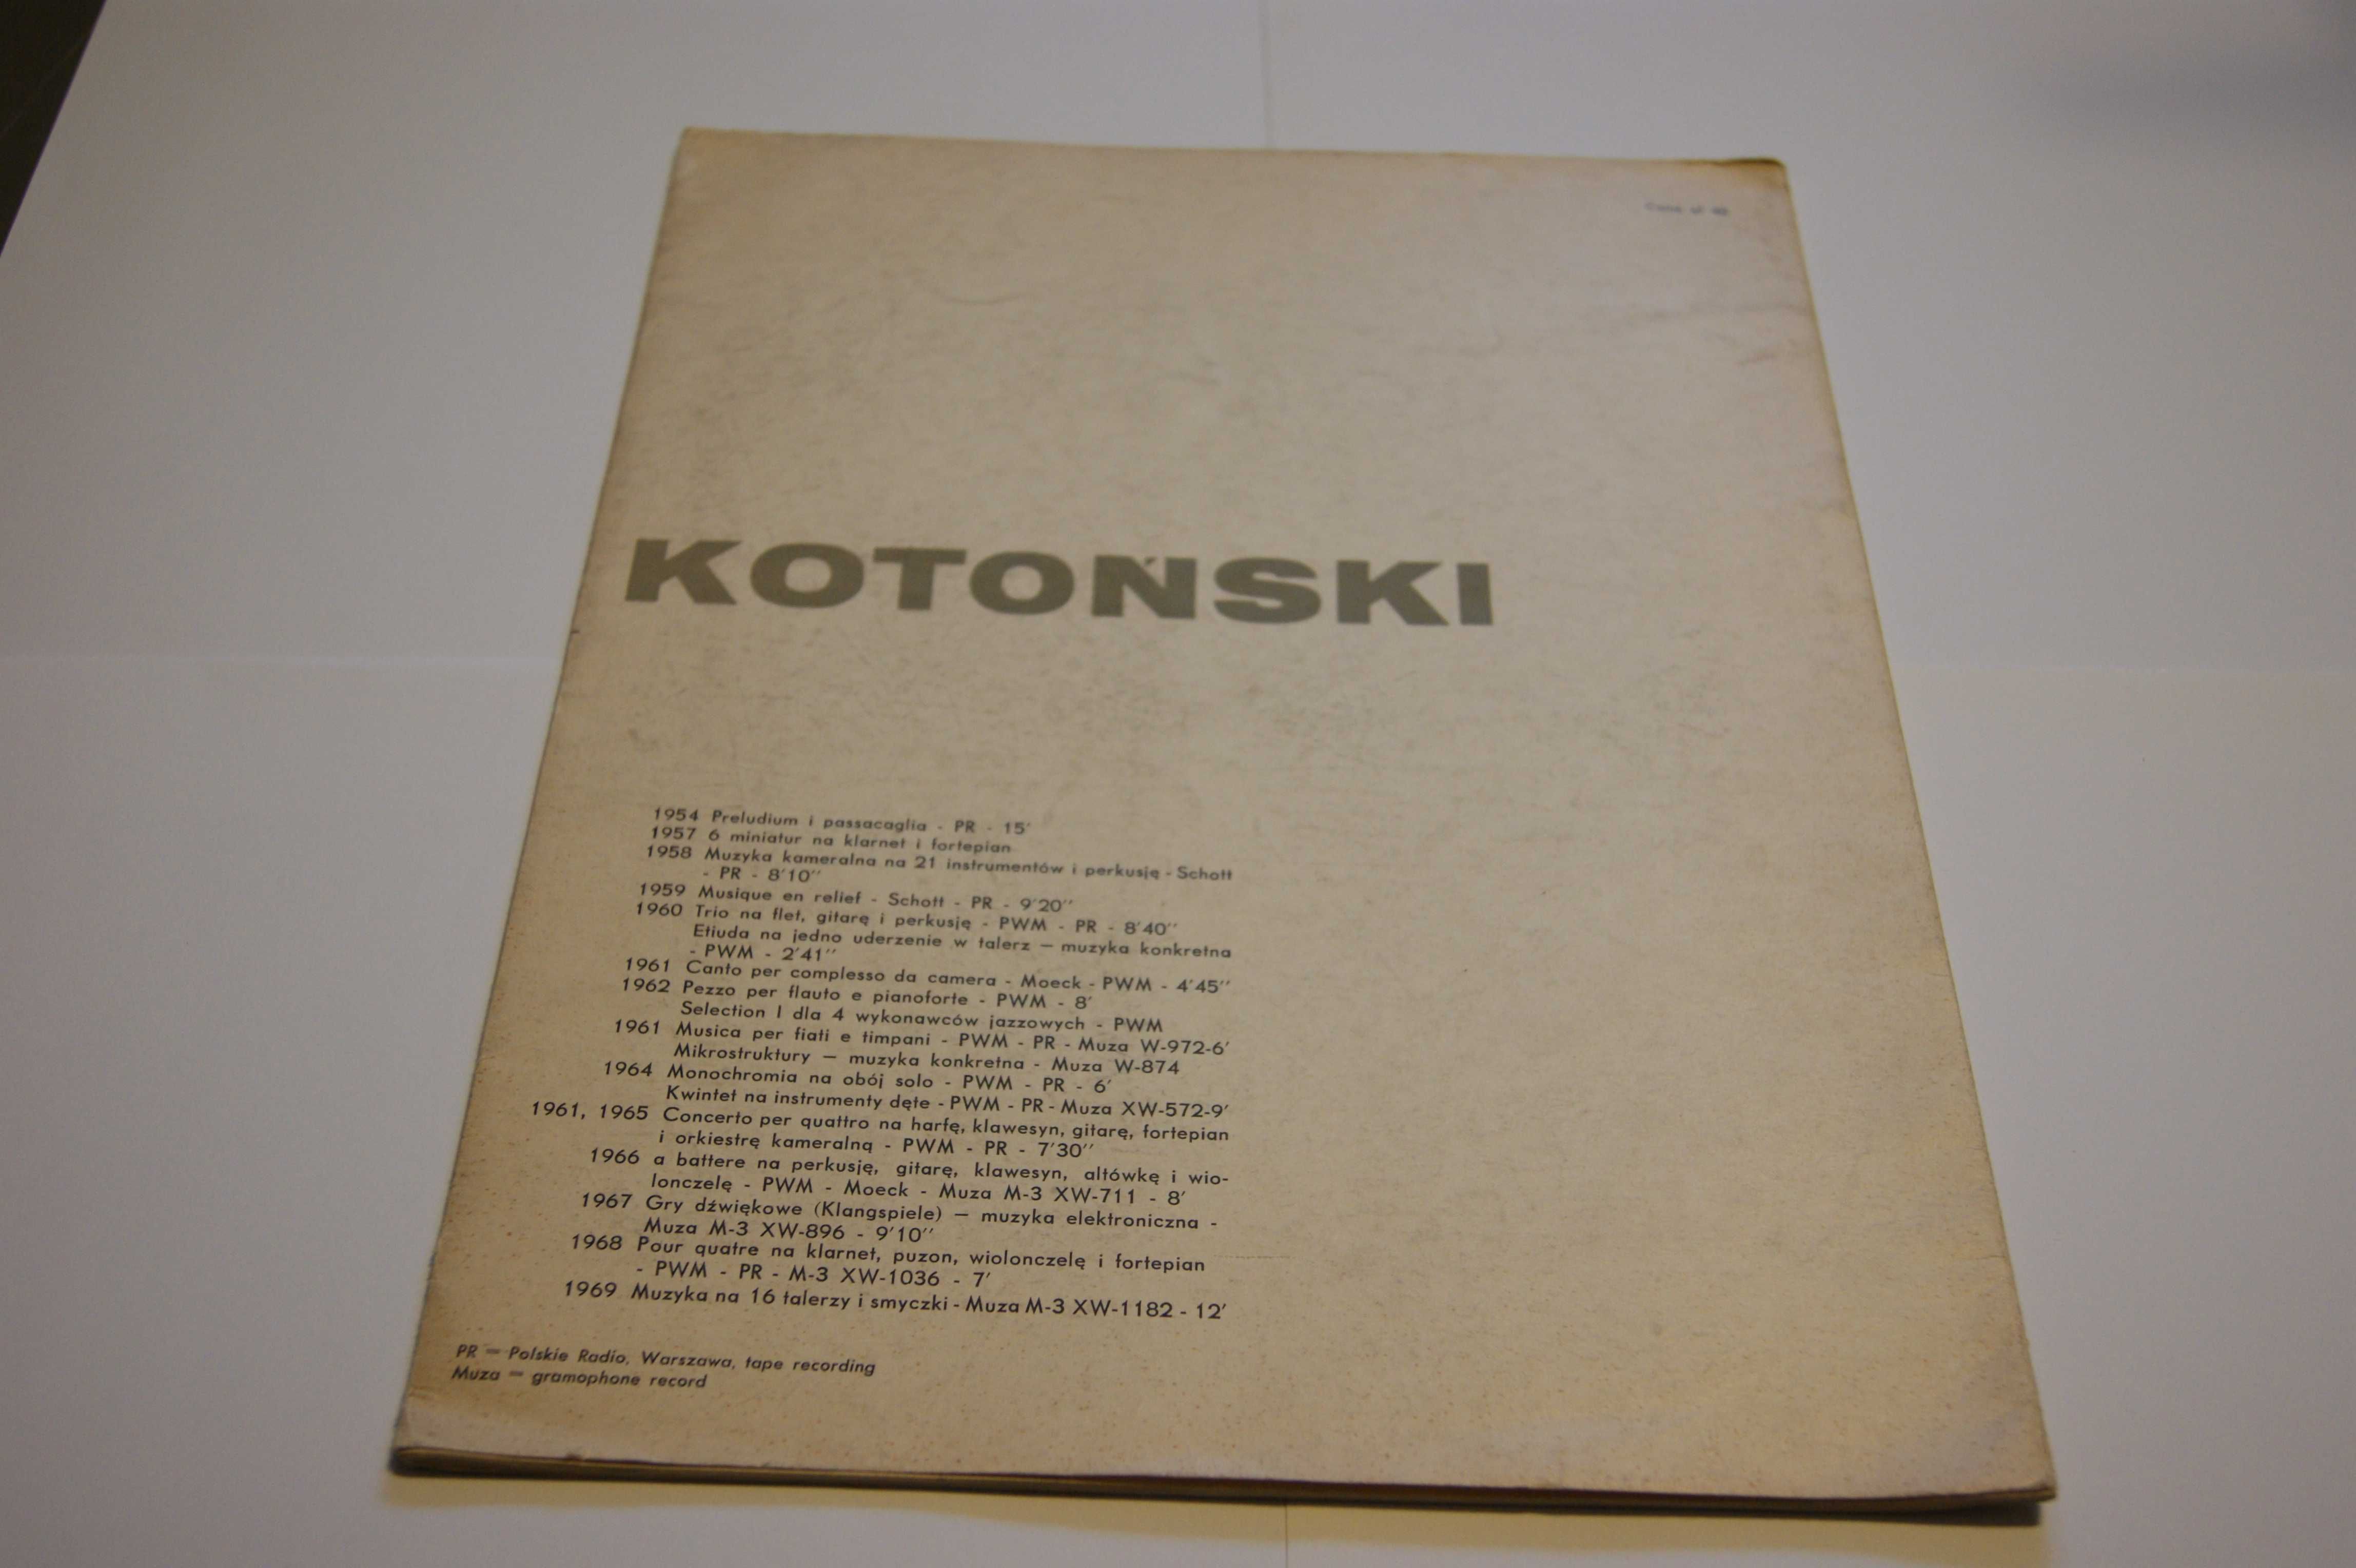 Włodzimierz Kotoński – "Canto" per complesso da camera